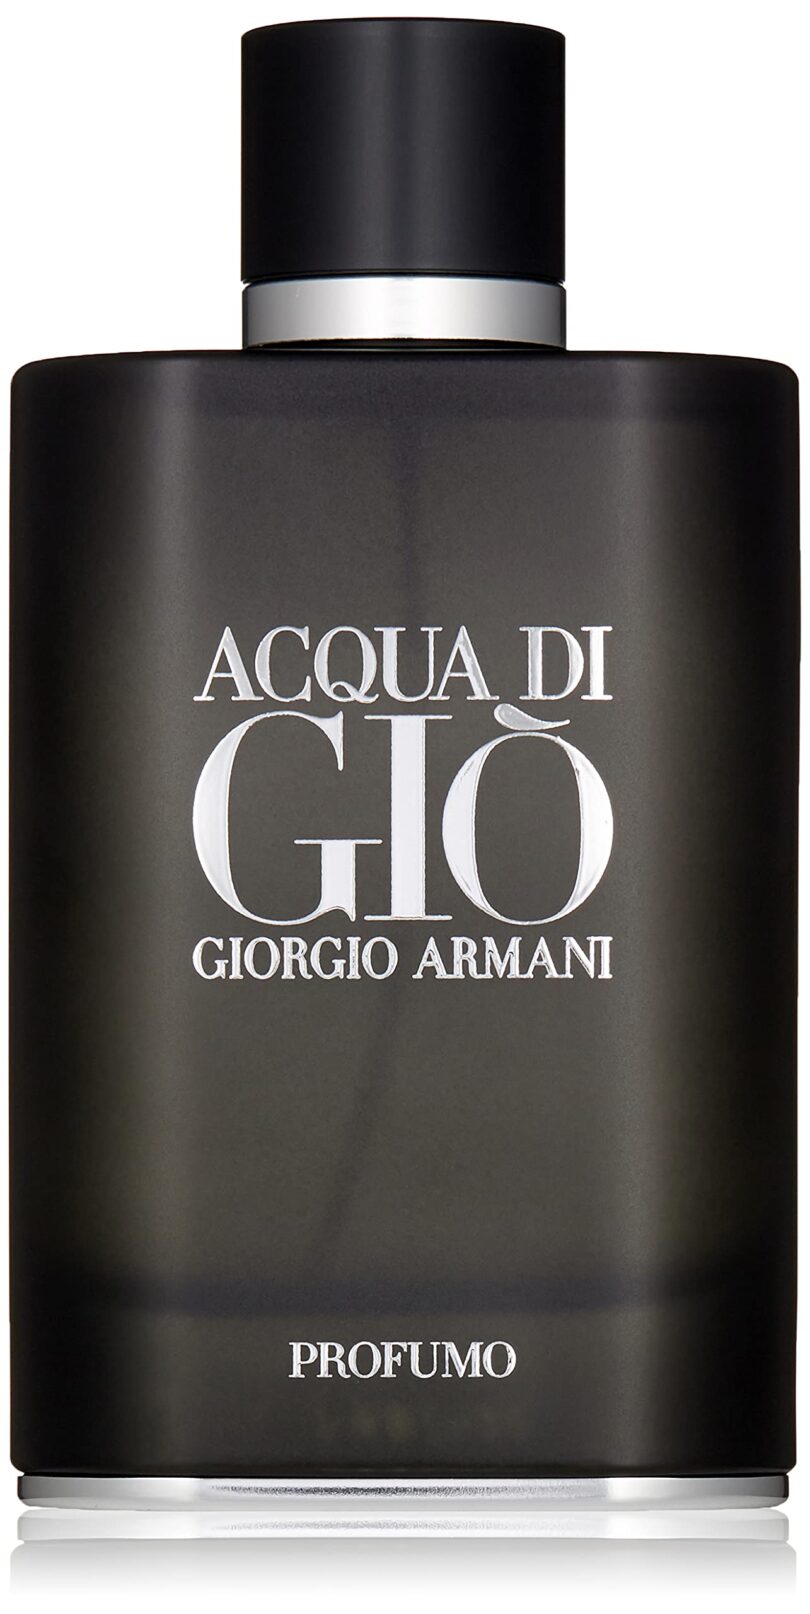 Where to Buy Acqua Di Gio Profumo